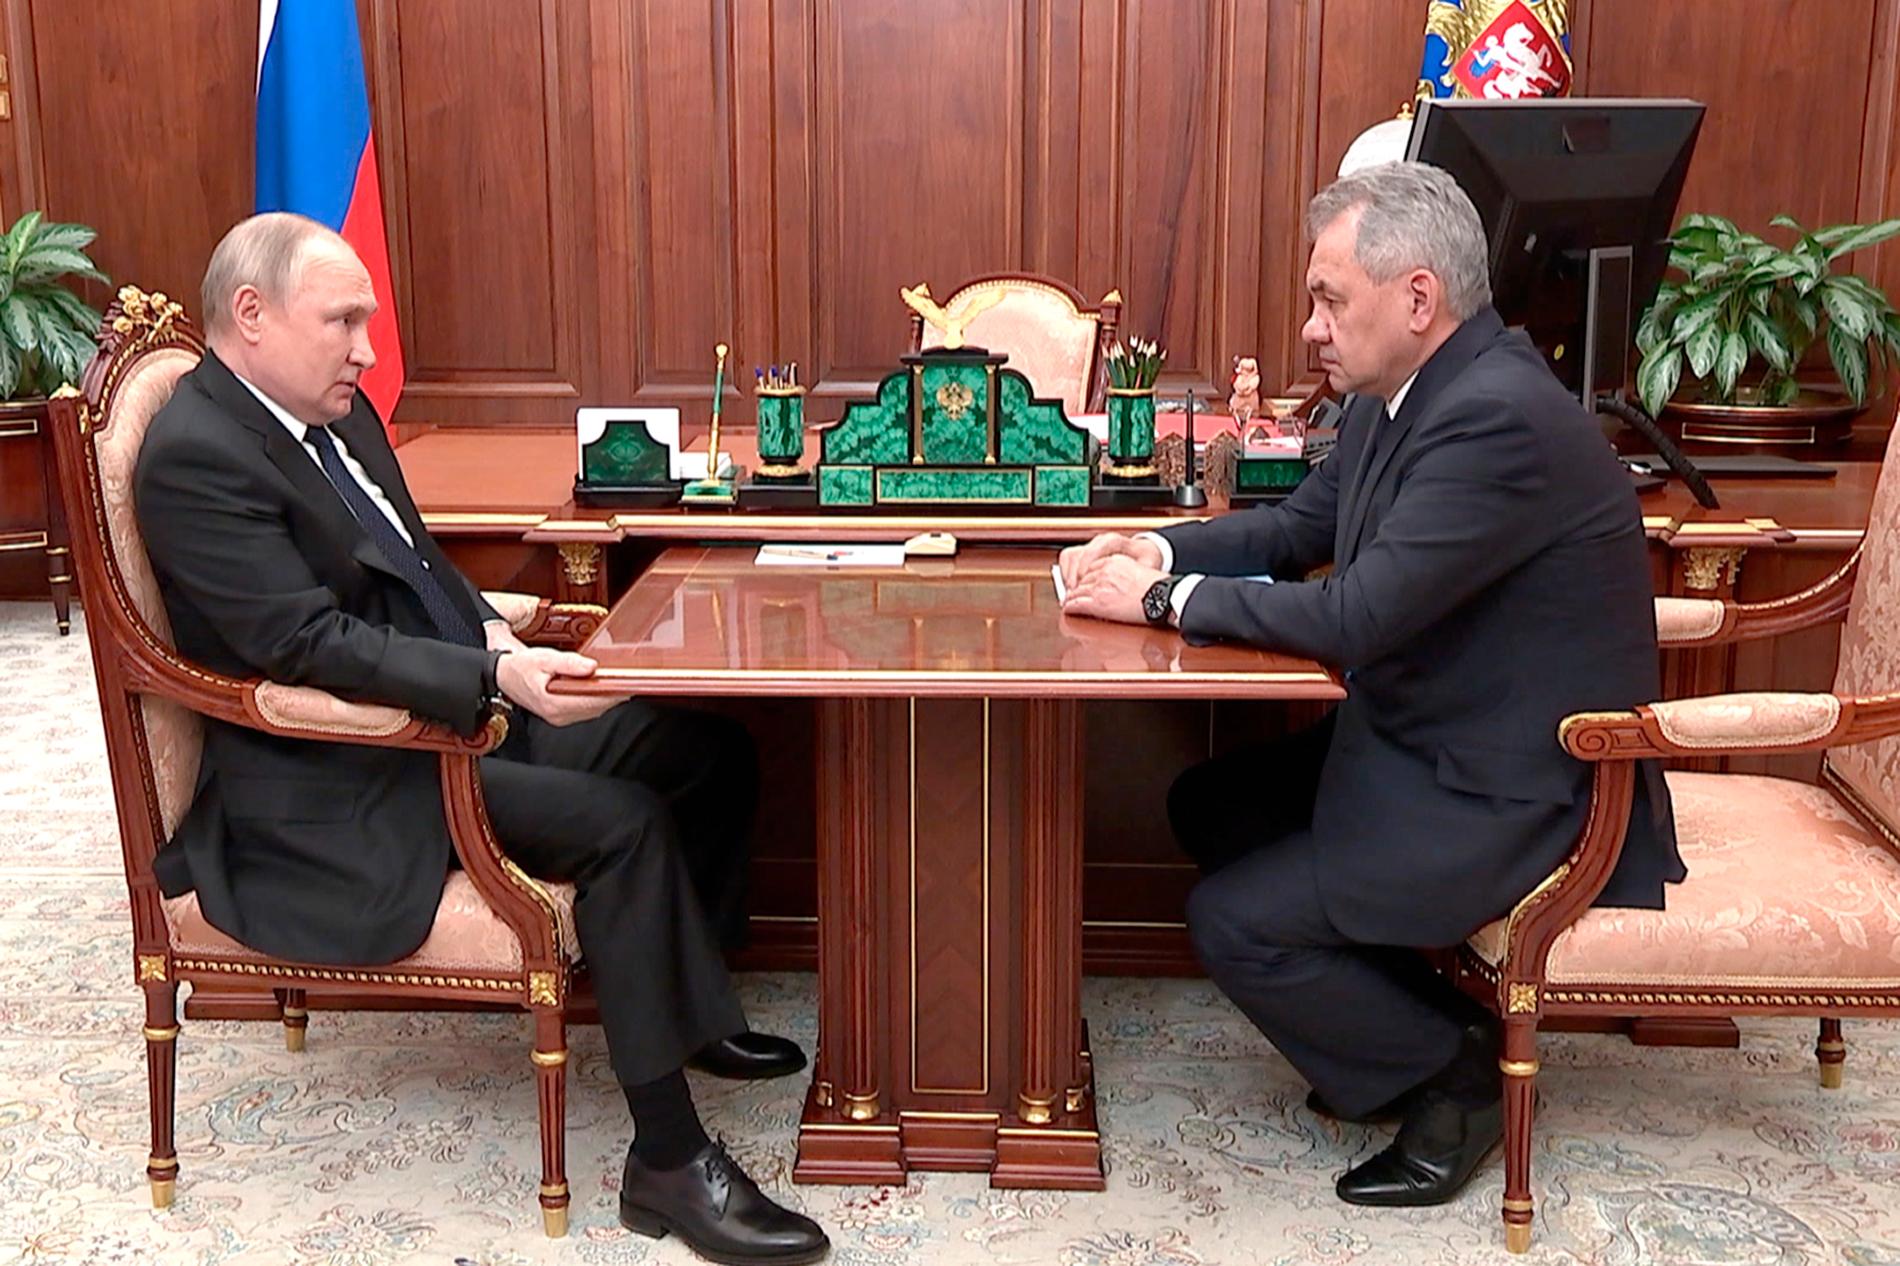 President Vladimir Putins grepp om bordskanten har lett till spekulationer om en sviktande hälsa. Bilden är från ett möte med ryske försvarsministern Segej Shojgu 21 april.